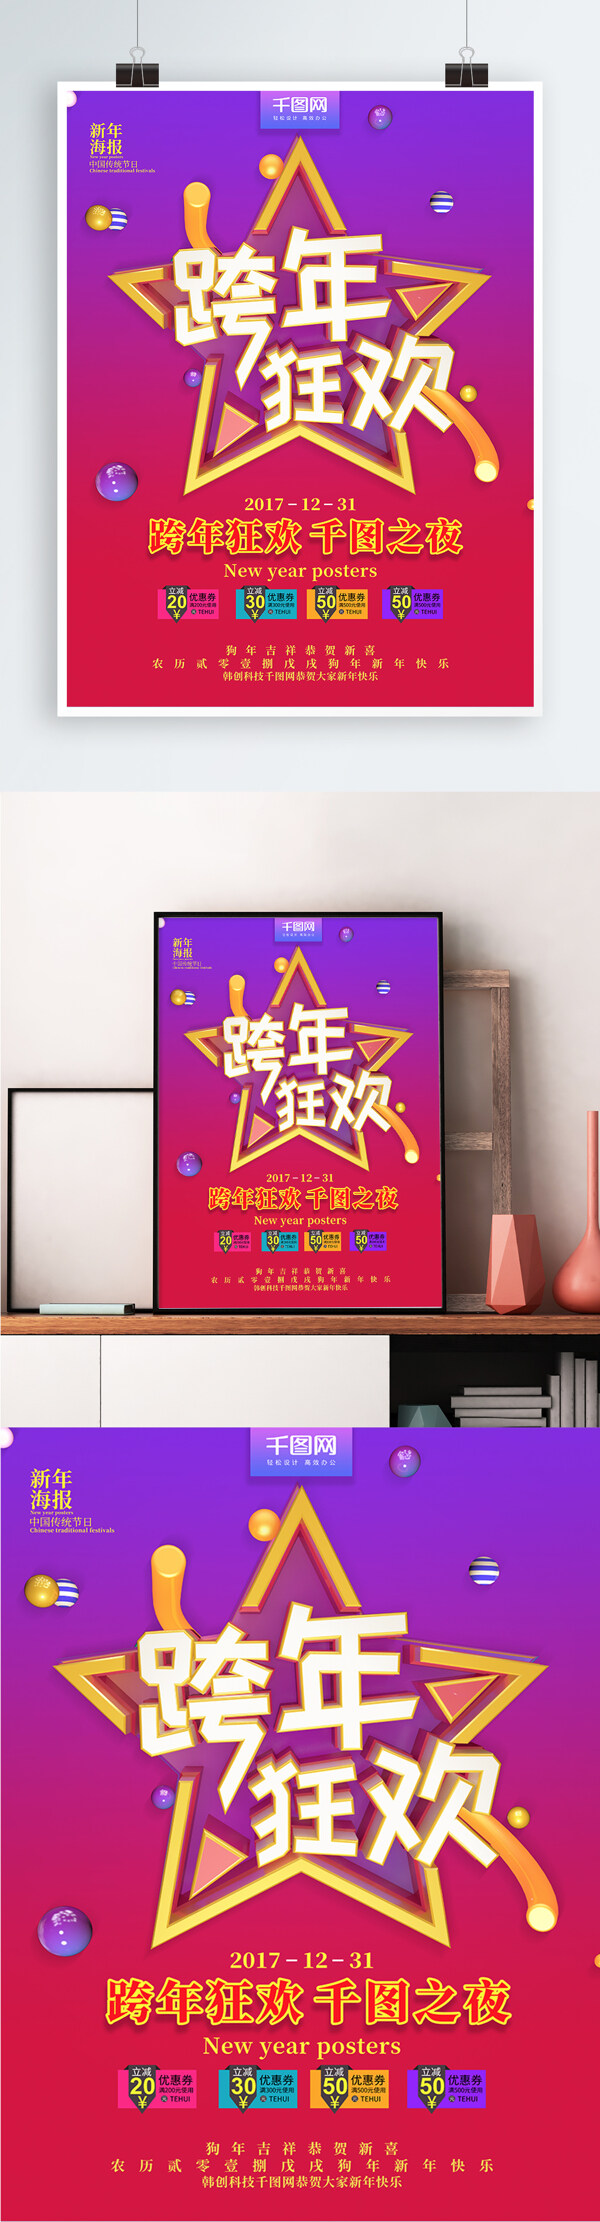 炫酷跨年狂欢2018跨年海报